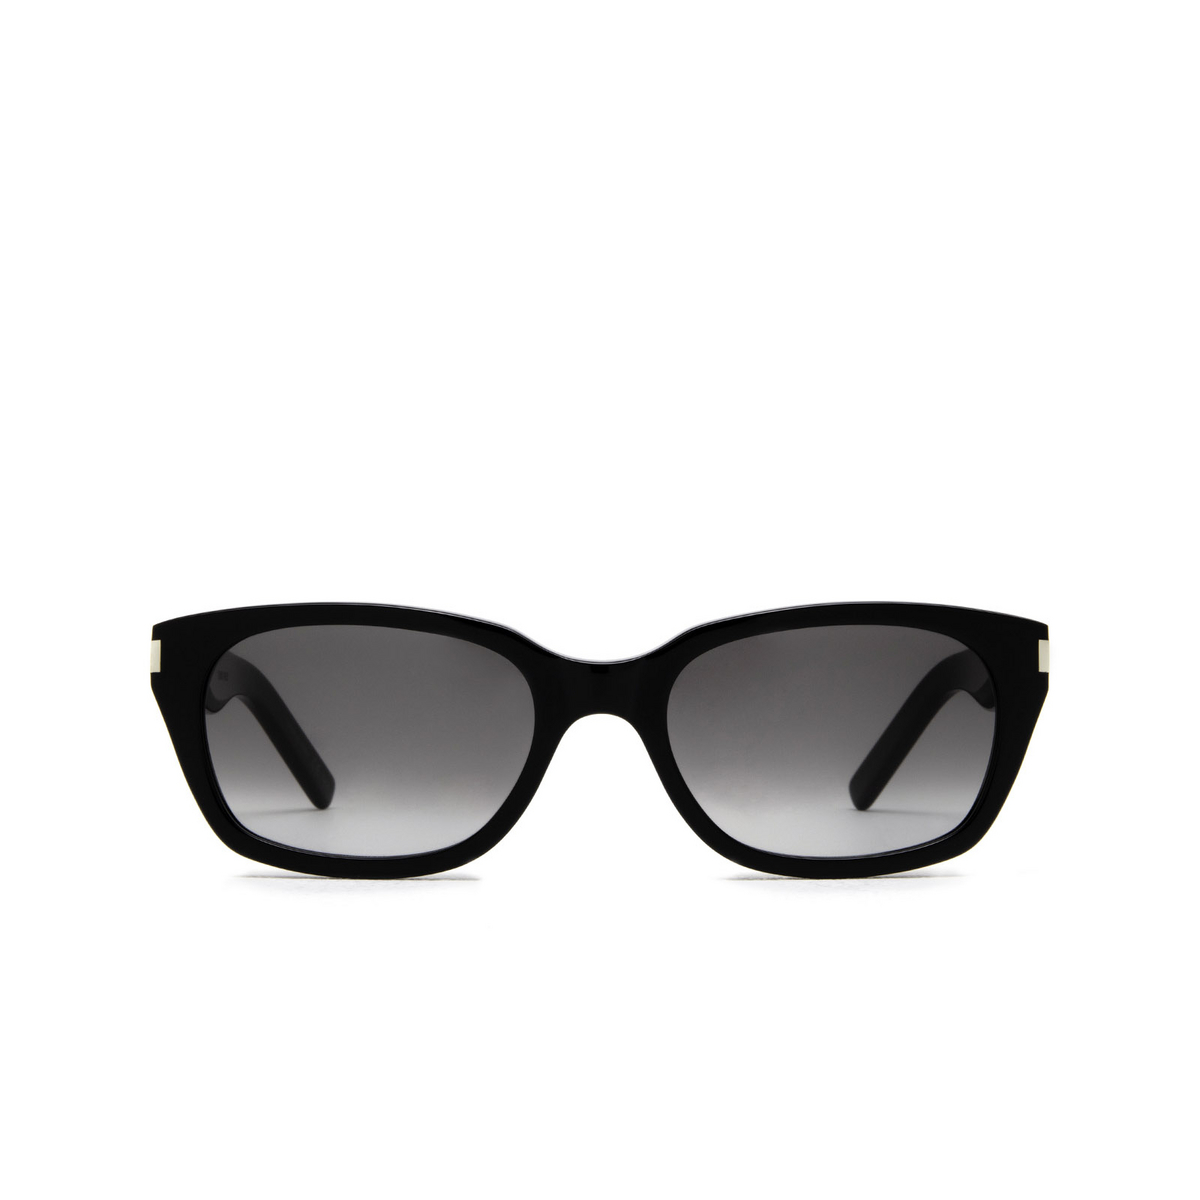 Saint Laurent® Rectangle Sunglasses: SL 522 color Black 001 - front view.